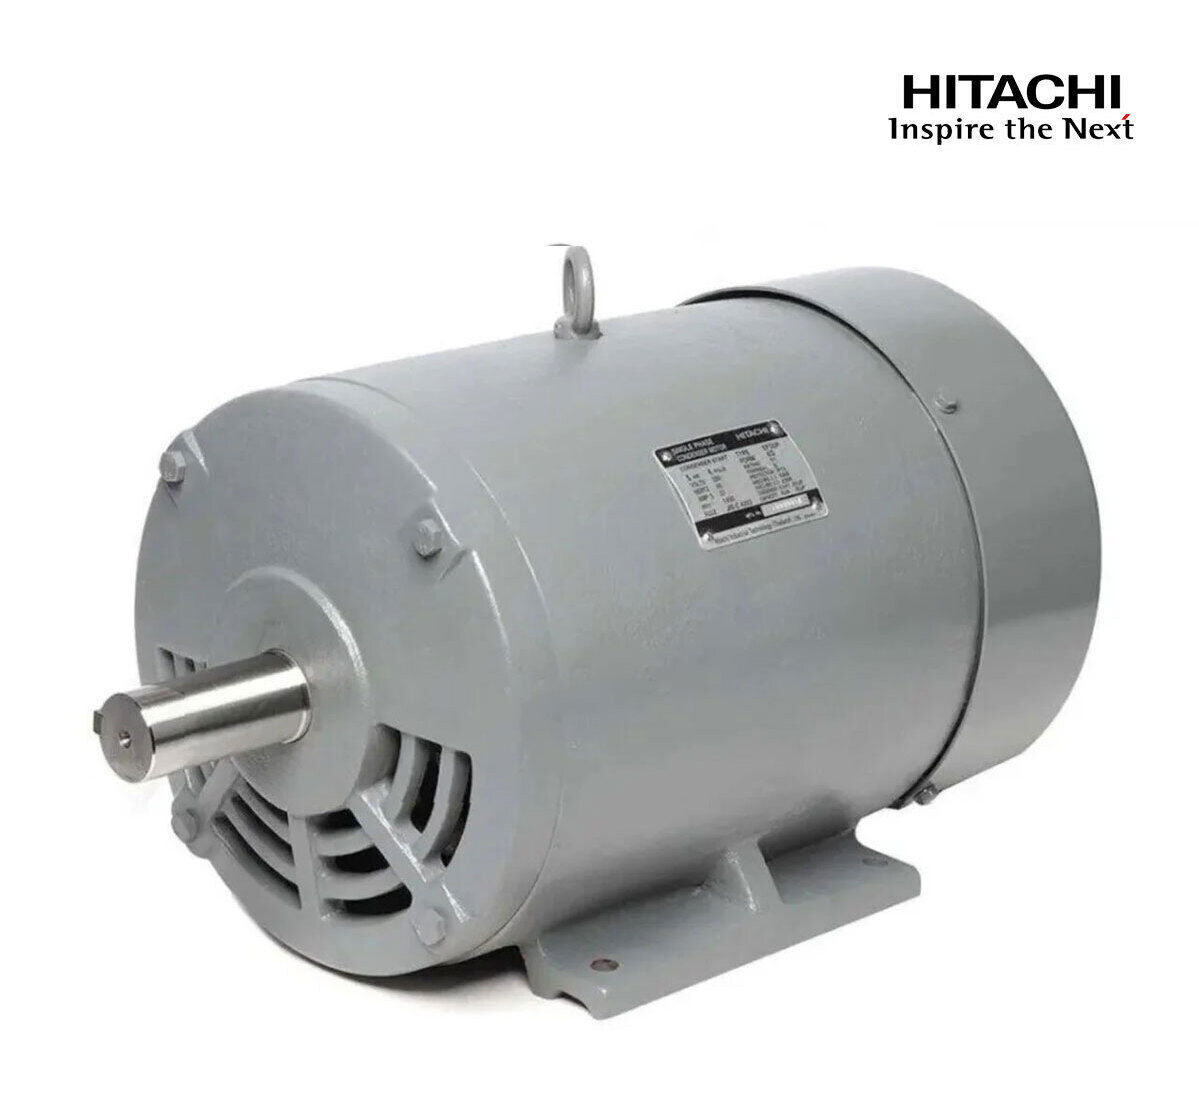 มอเตอร์ฮิตาชิของแท้ 100% HITACHI รุ่น TFO-KQ กำลัง 5 แรงม้า (3.7 KW.) กำลังไฟฟ้าที่ใช้ 220V ความเร็วรอบตัวเปล่า 1450 RPM แกนเพลามอเตอร์ 38 MM.รับประกัน 3 ปี มีของพร้อมจัดส่งทุกวัน